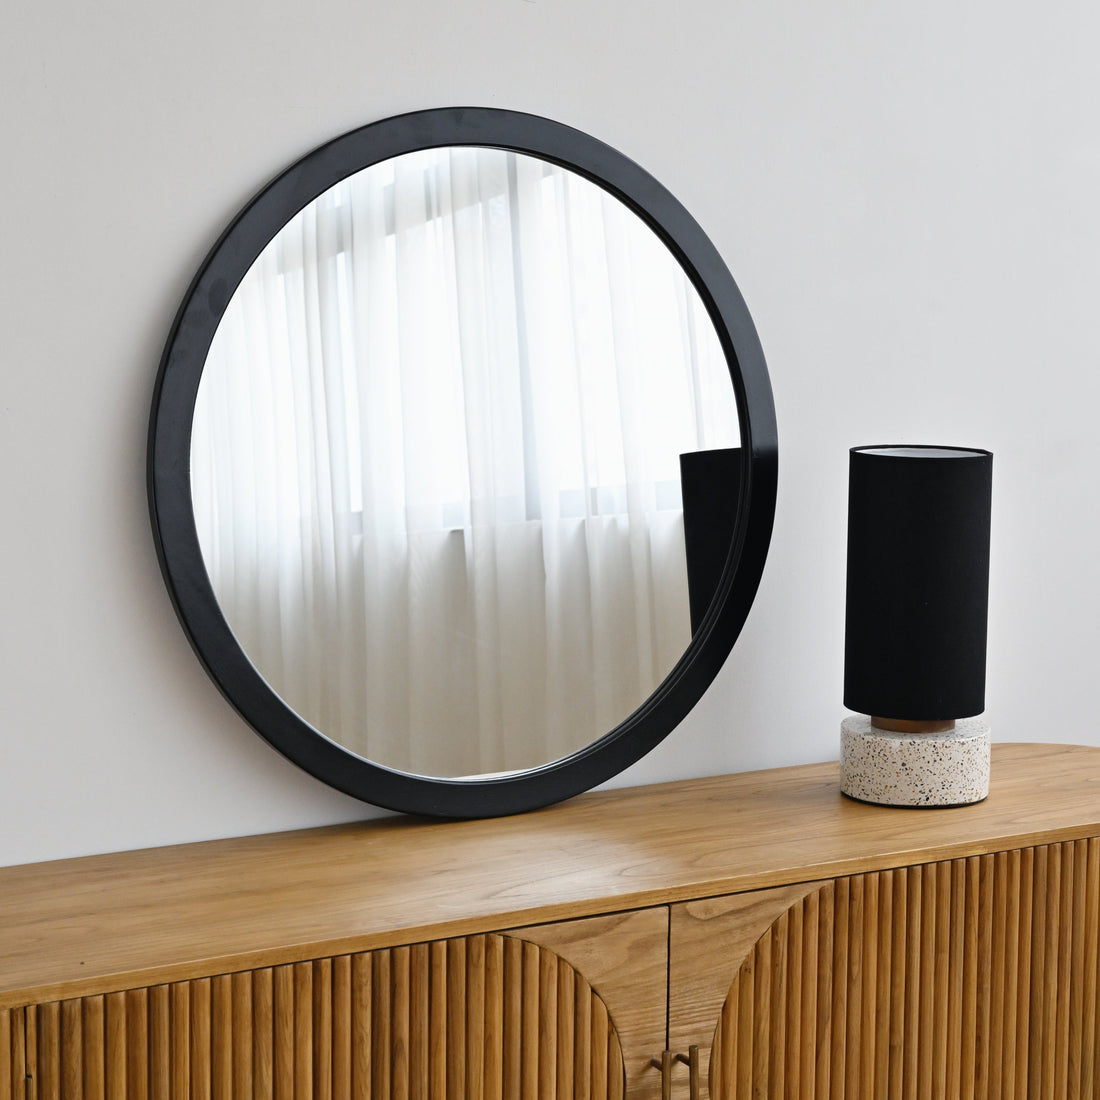 Hoi An Round Wooden Mirror - Black